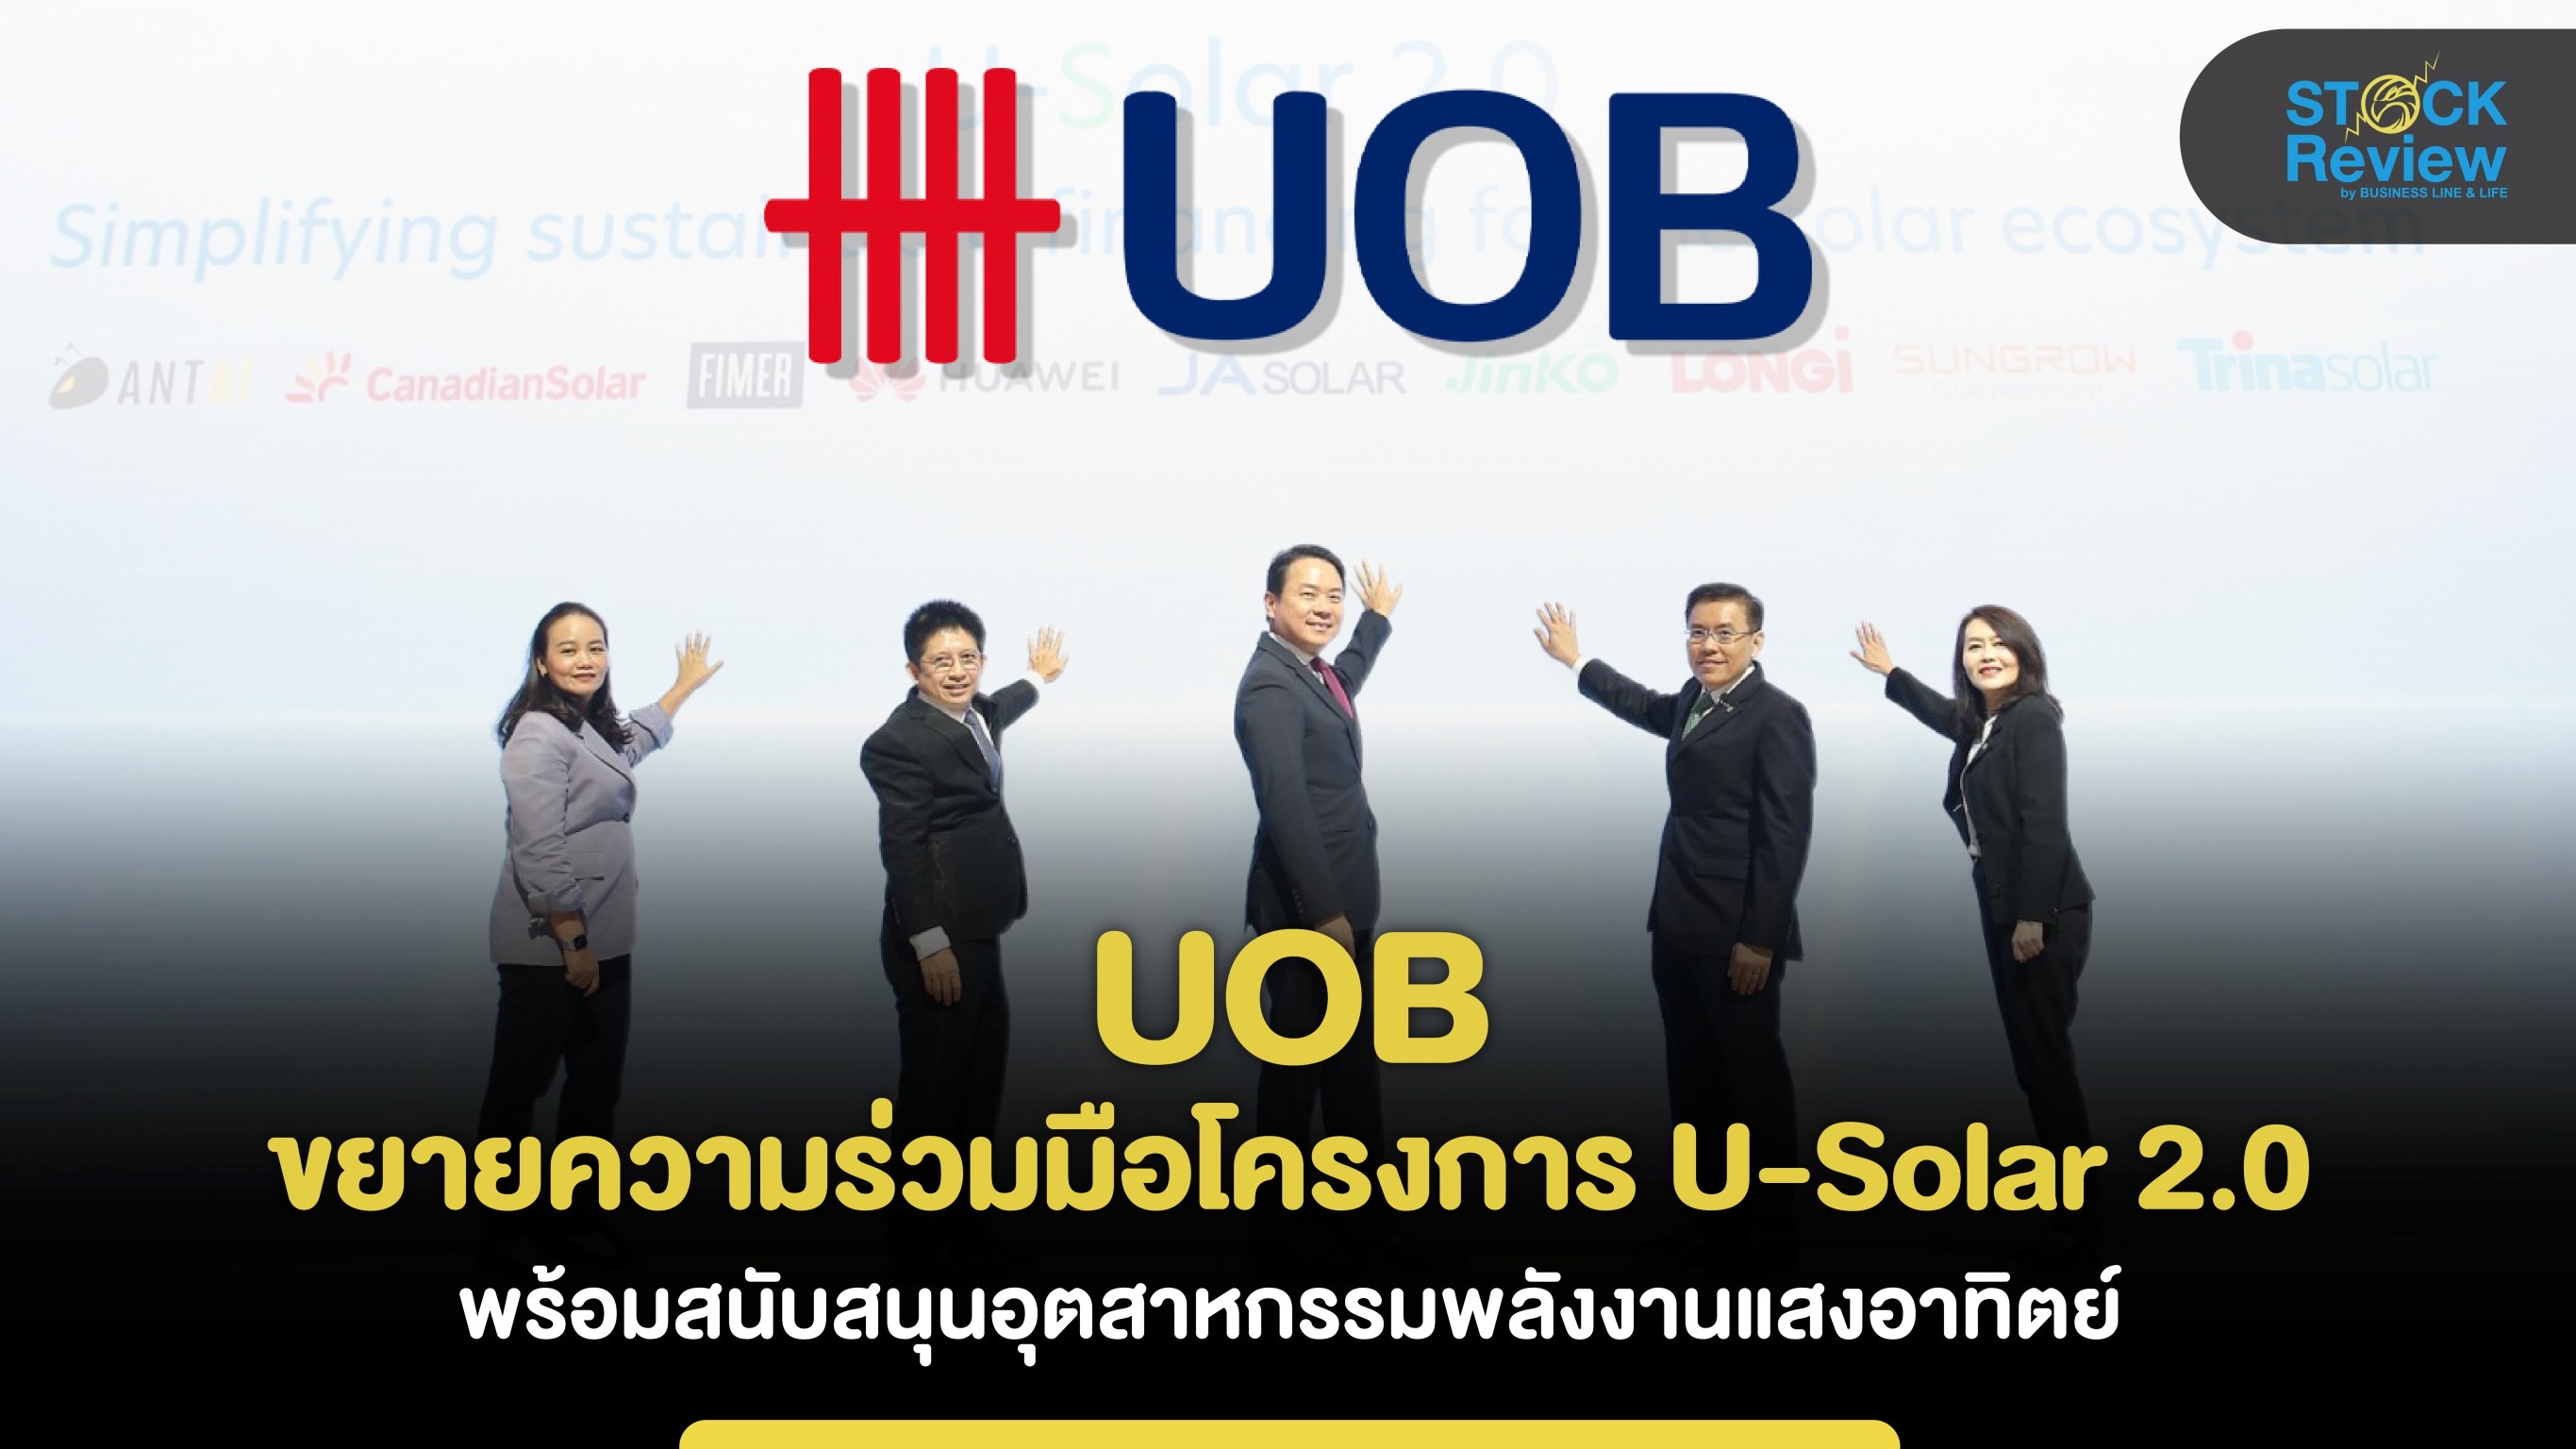 UOB ขยายความร่วมมือโครงการ U-Solar 2.0 หนุนทุกภาคส่วนอุตสาหกรรมพลังงานแสงอาทิตย์